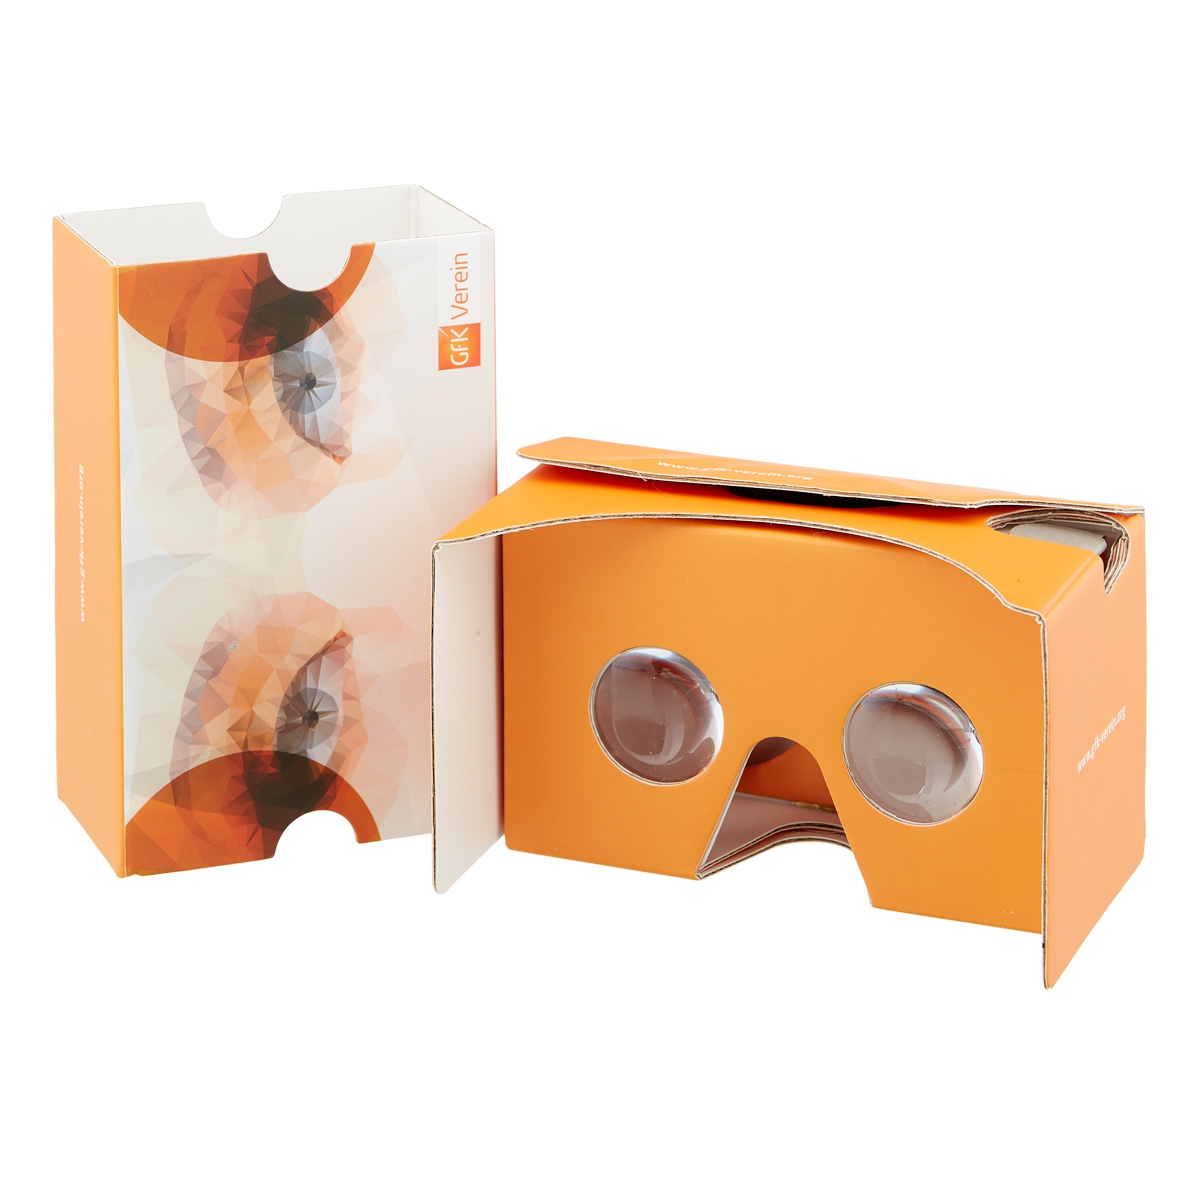 VR-Brille aus Karton Werbeartikel